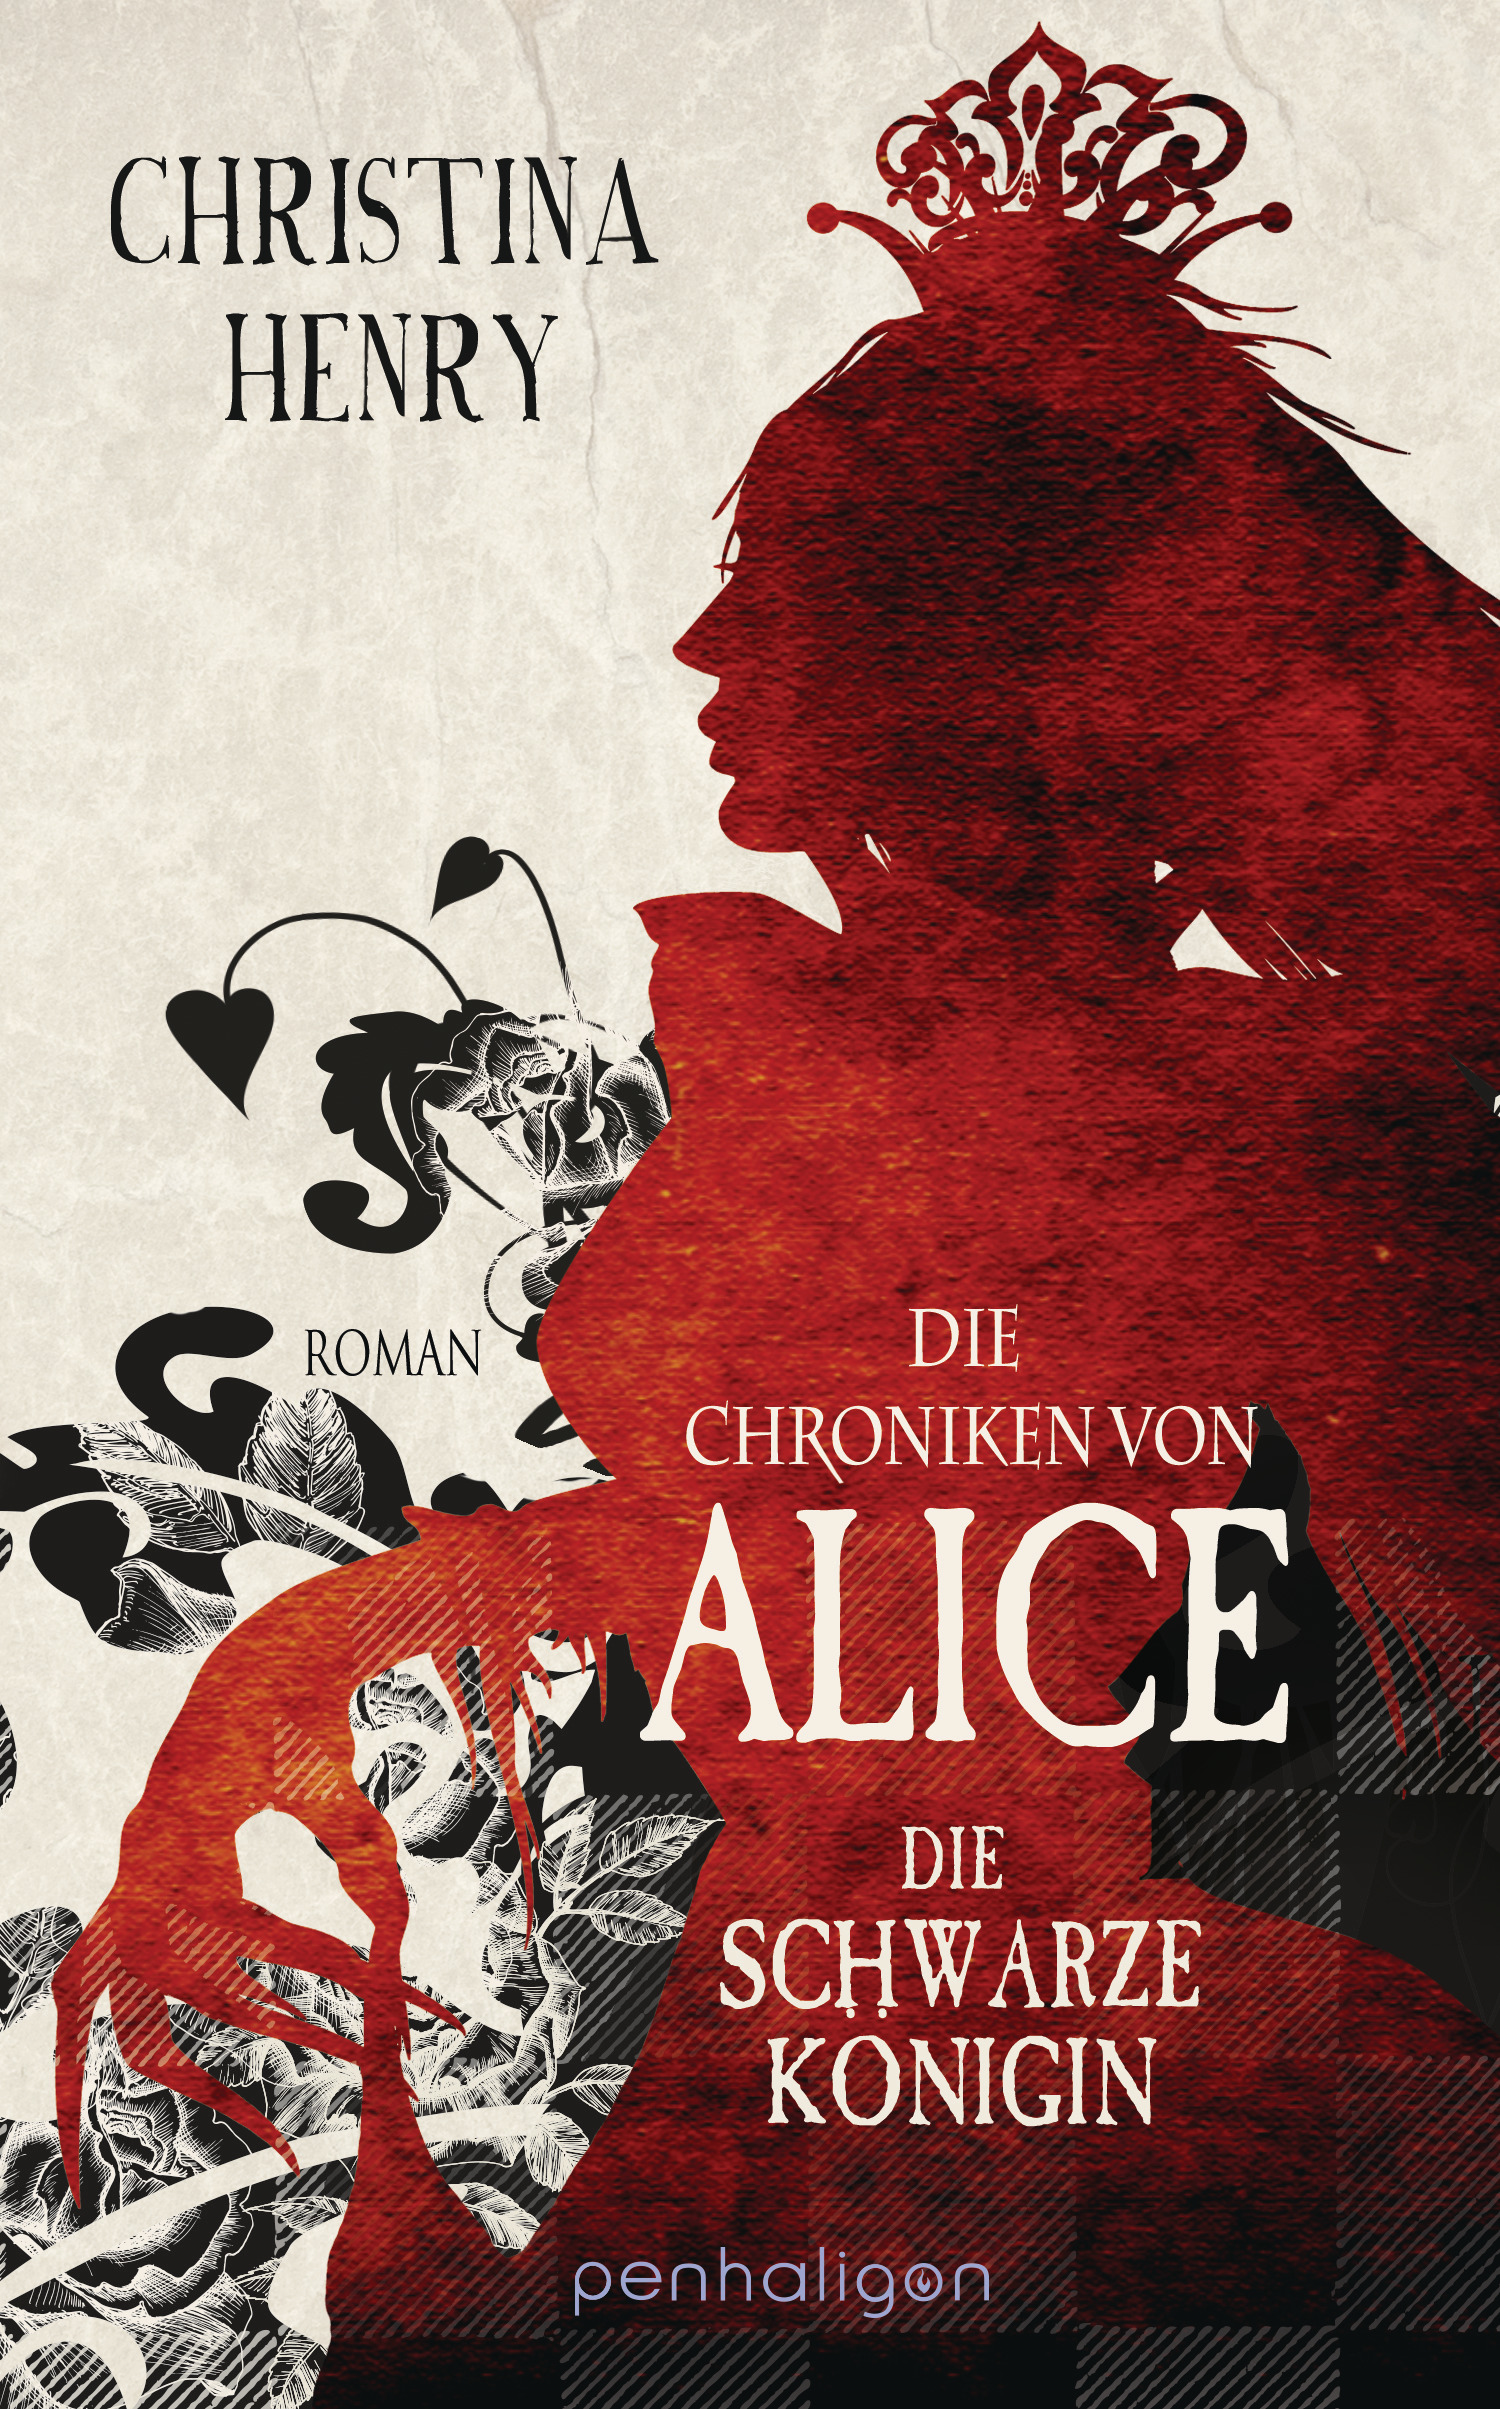 Bücherblog. Neuerscheinungen. Buchcover. Die Chroniken von Alice - Die Schwarze Königin (Bd.2) von Christina Henry. Horror. Fantasy. penhaligon.